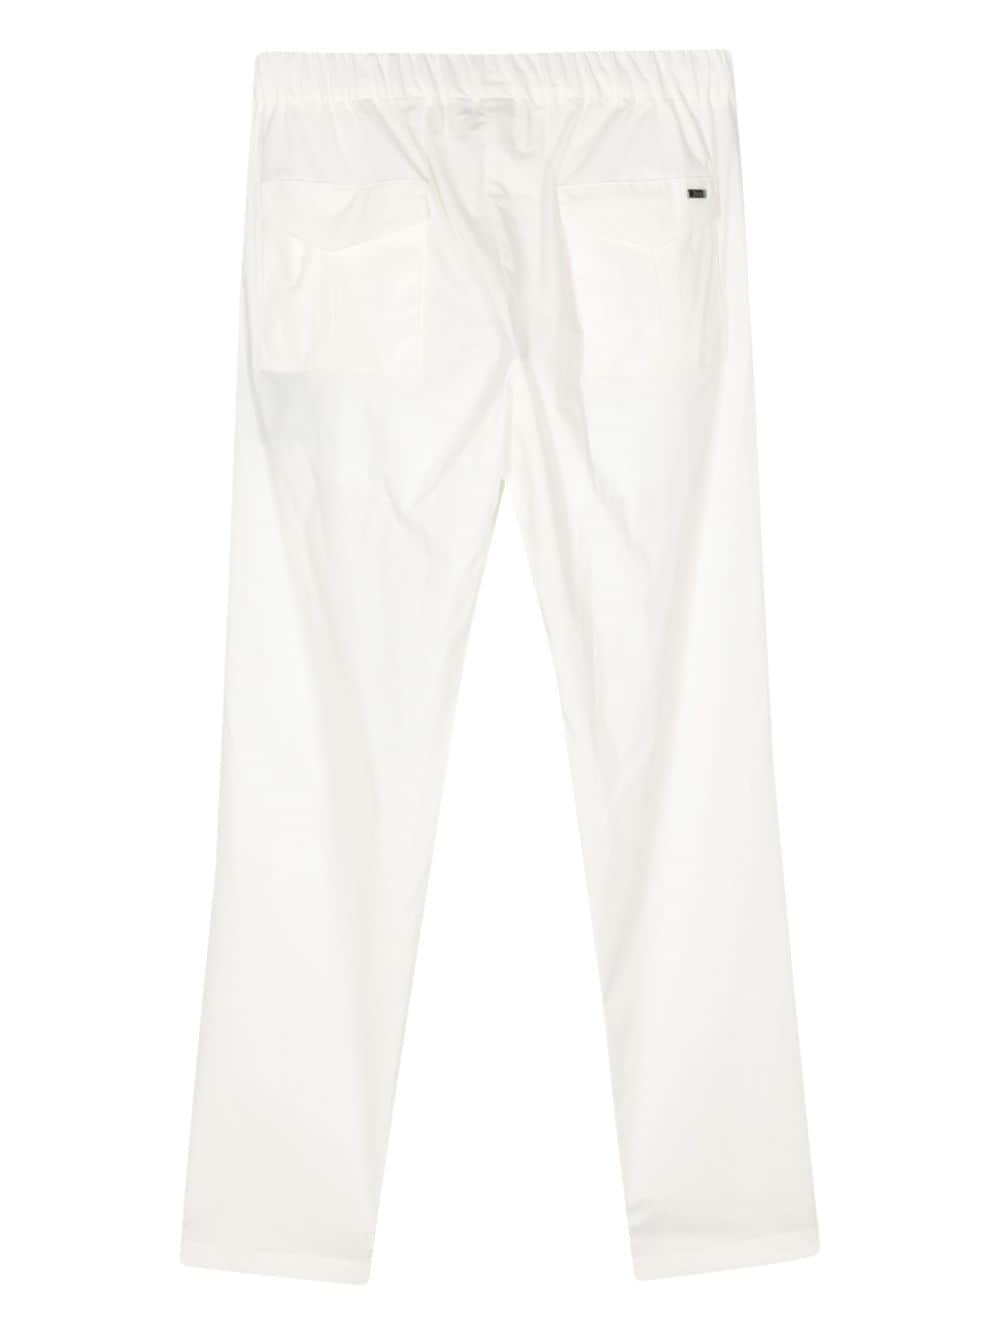 Pantalon blanc avec cordon de serrage